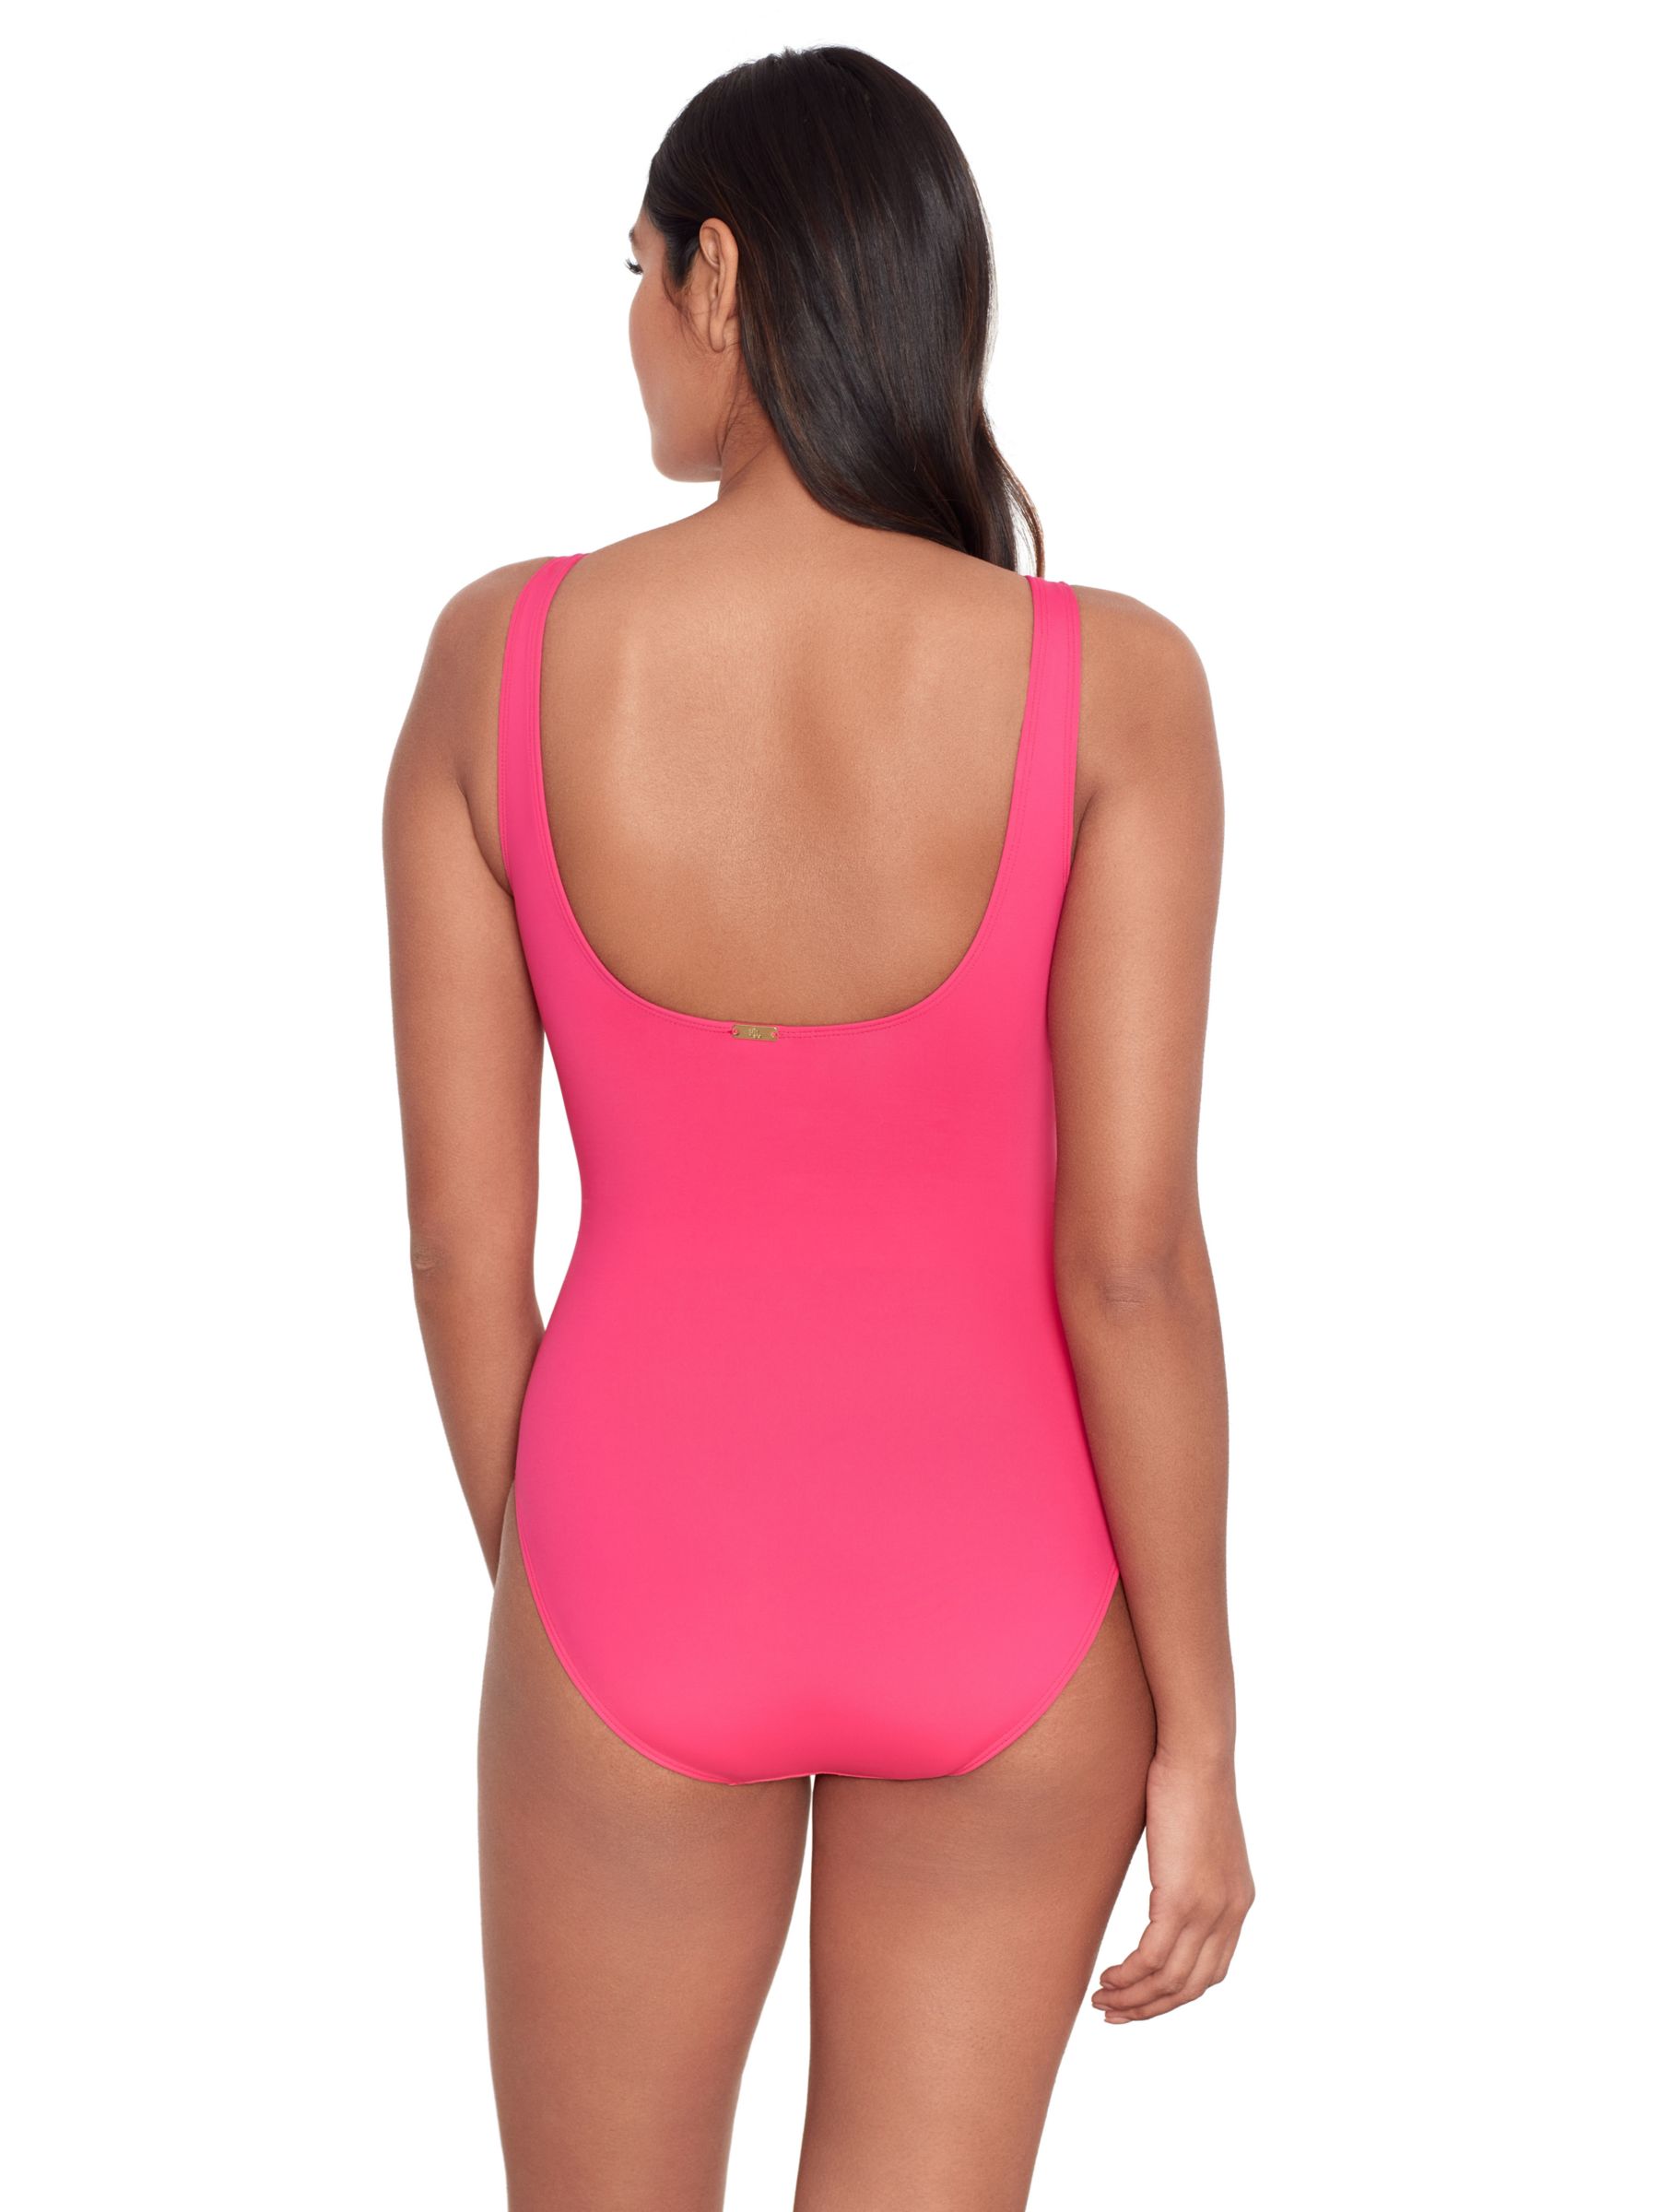 Ralph Lauren Lauren Ralph Lauren Ring Front Swimsuit, Pink, 8